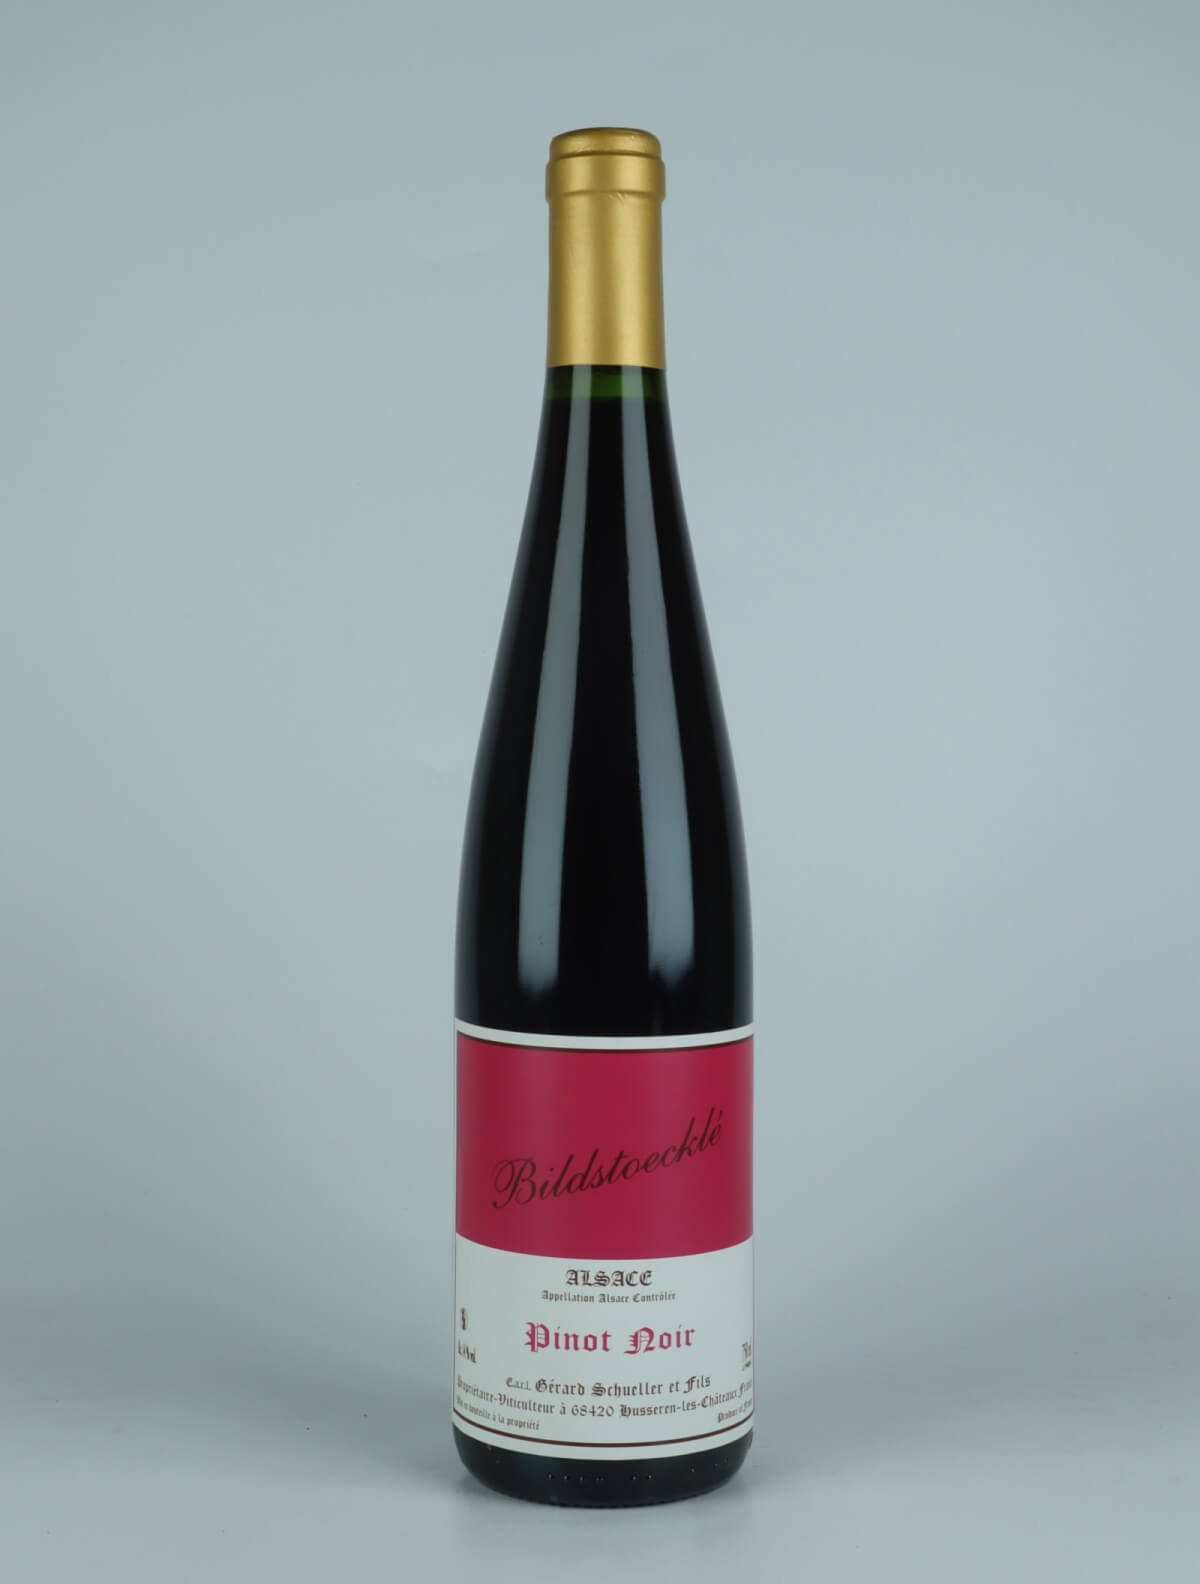 En flaske 2019 Pinot Noir - Bildstoecklé Rødvin fra Gérard Schueller, Alsace i Frankrig